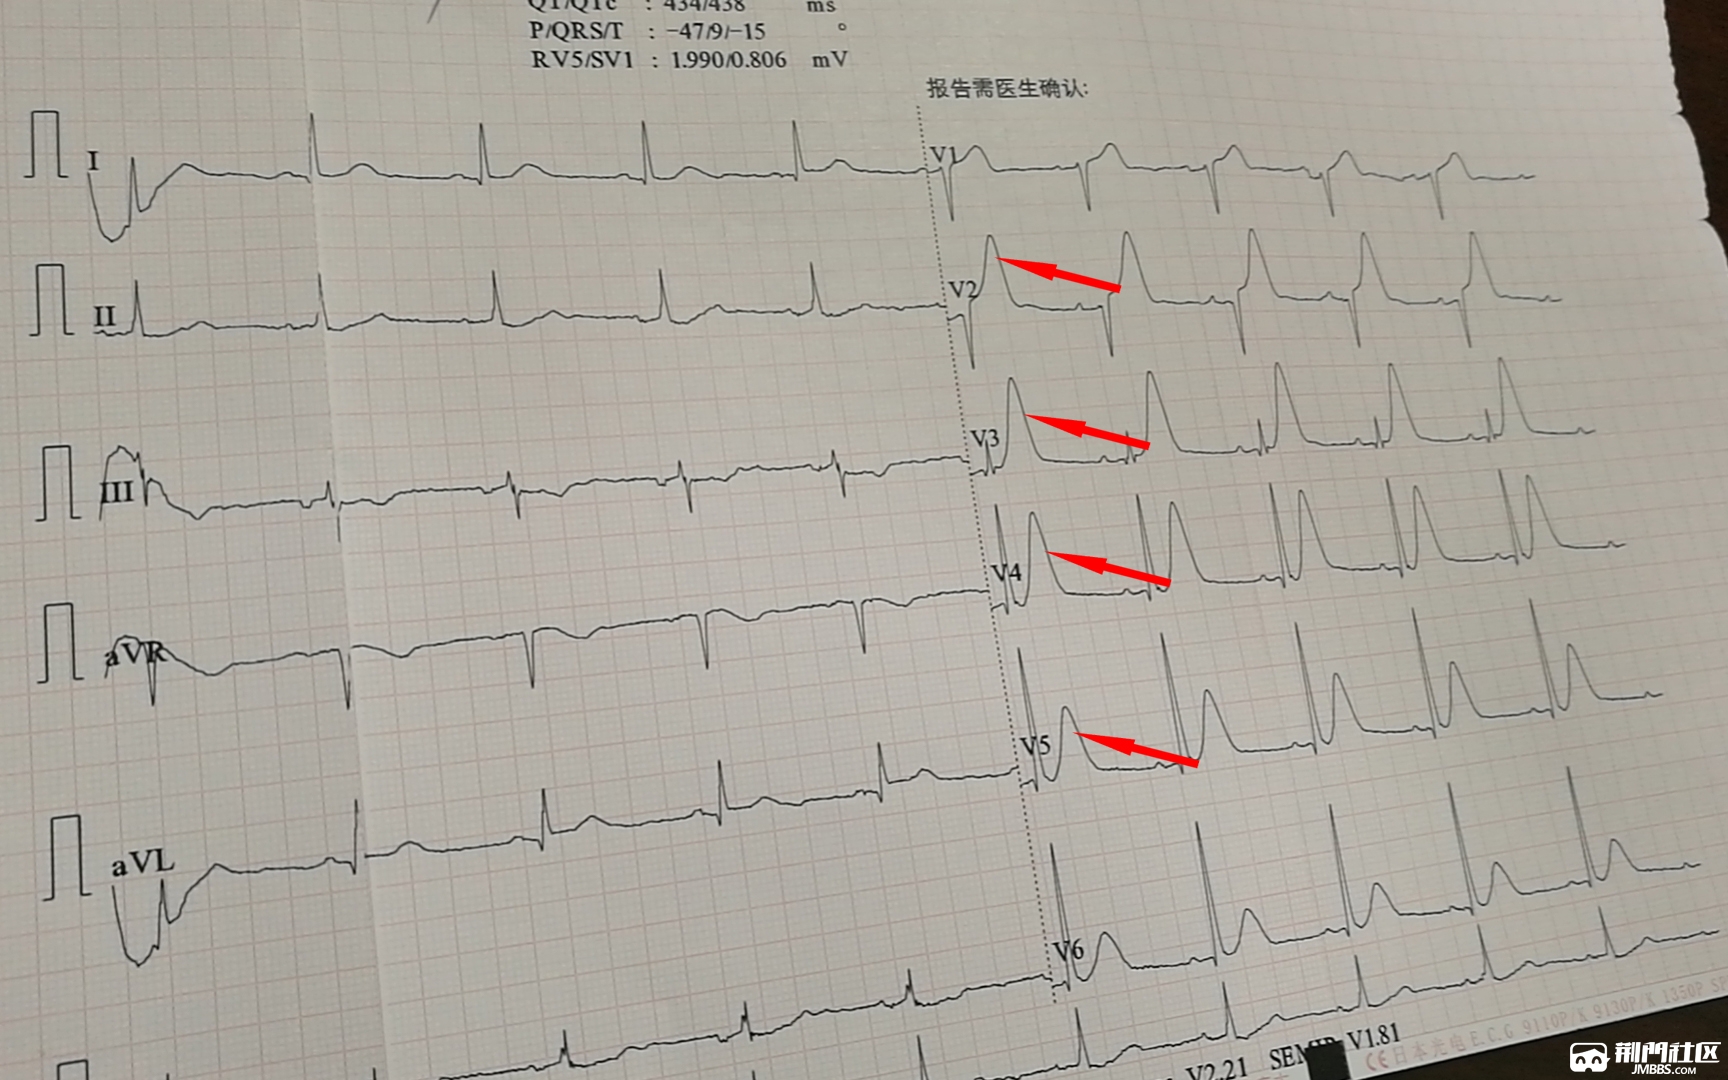 首次心电图胸导联t波异常高大(红箭头处),考虑急性心肌梗死